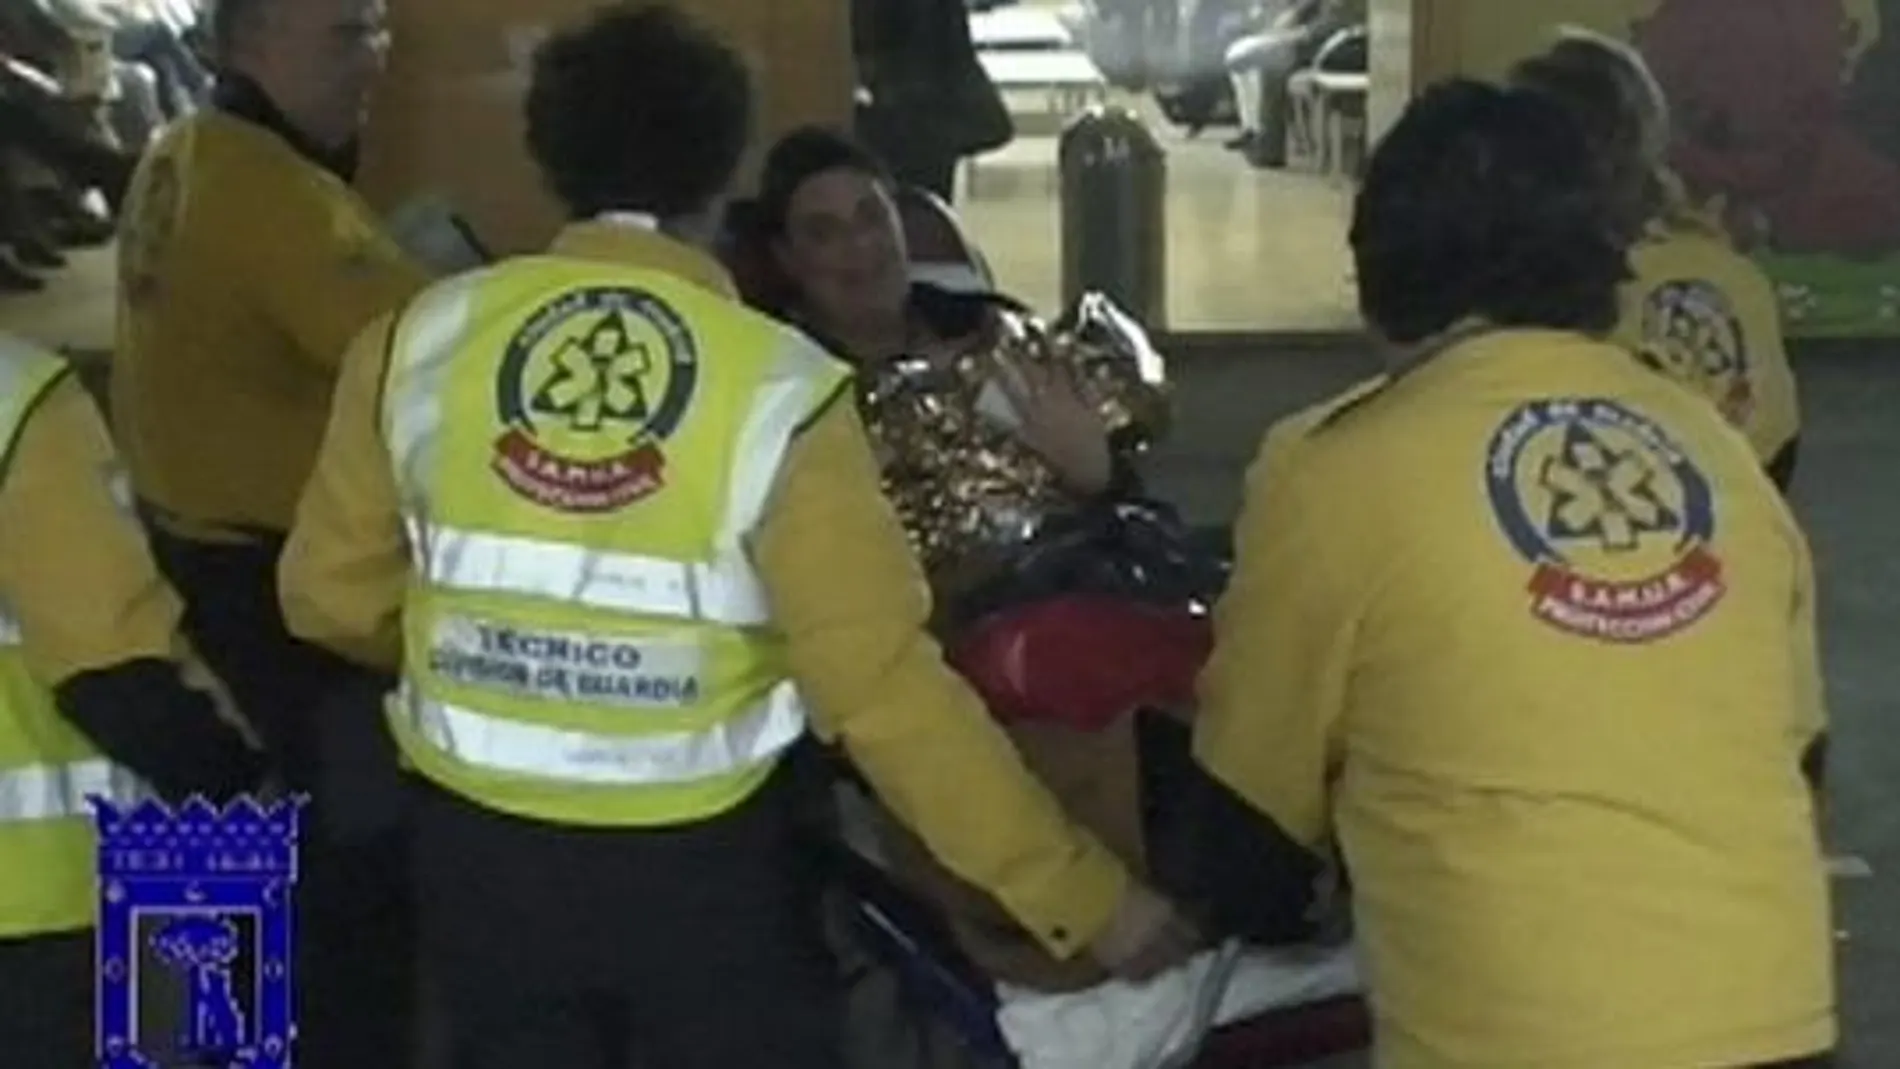 La madre y el bebé fueron trasladados al hospital Gregorio Marañón